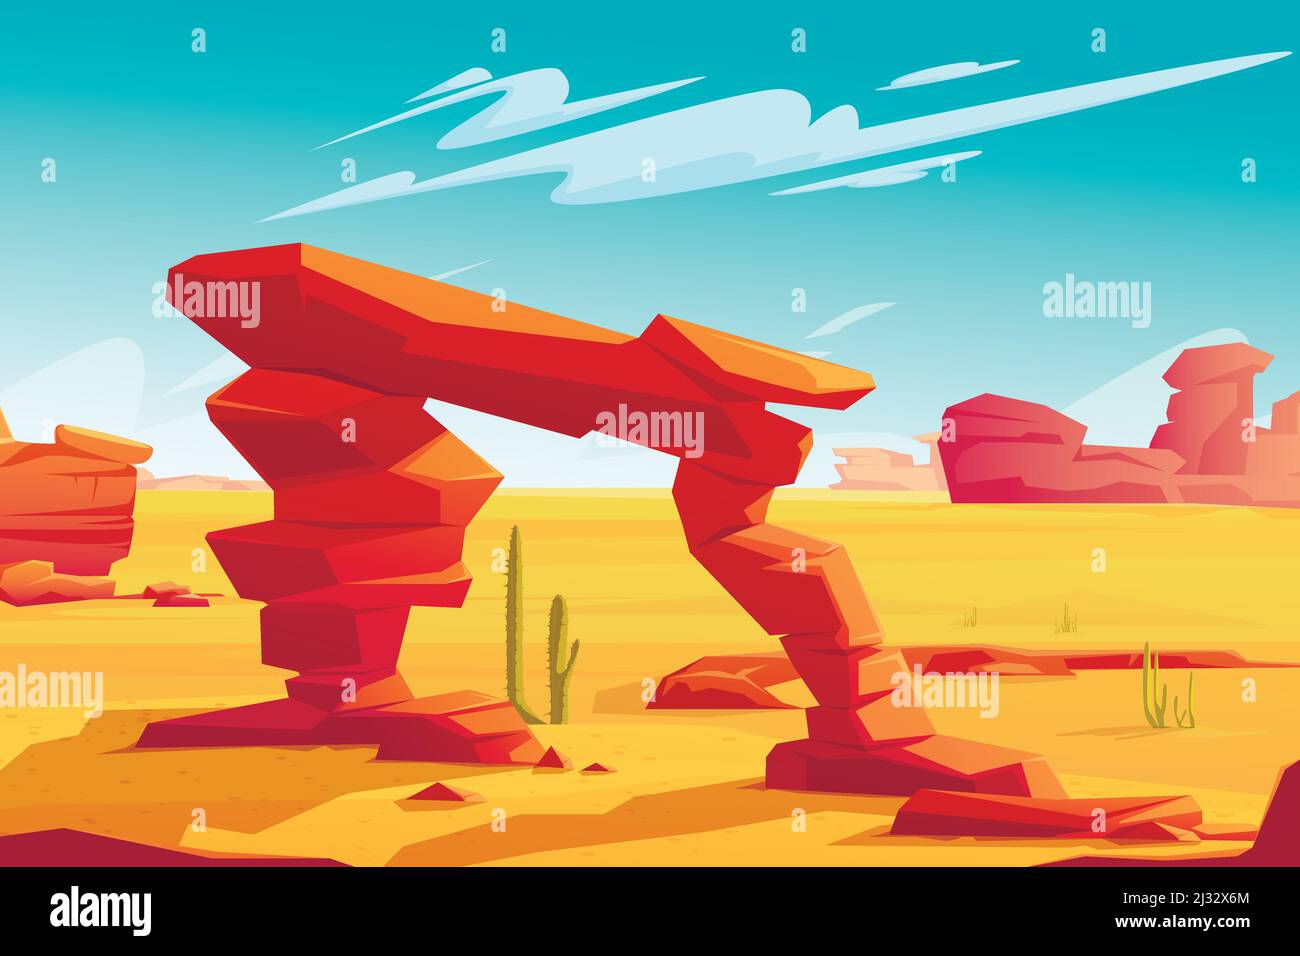 Wüstenbogen auf natürlichem Hintergrund der heißen Wüstenlandschaft mit gelbem Sand, roten Bergen, blauem Himmel mit hellen Wolken und grünen Kakteen, Wildnis Bann Stock Vektor